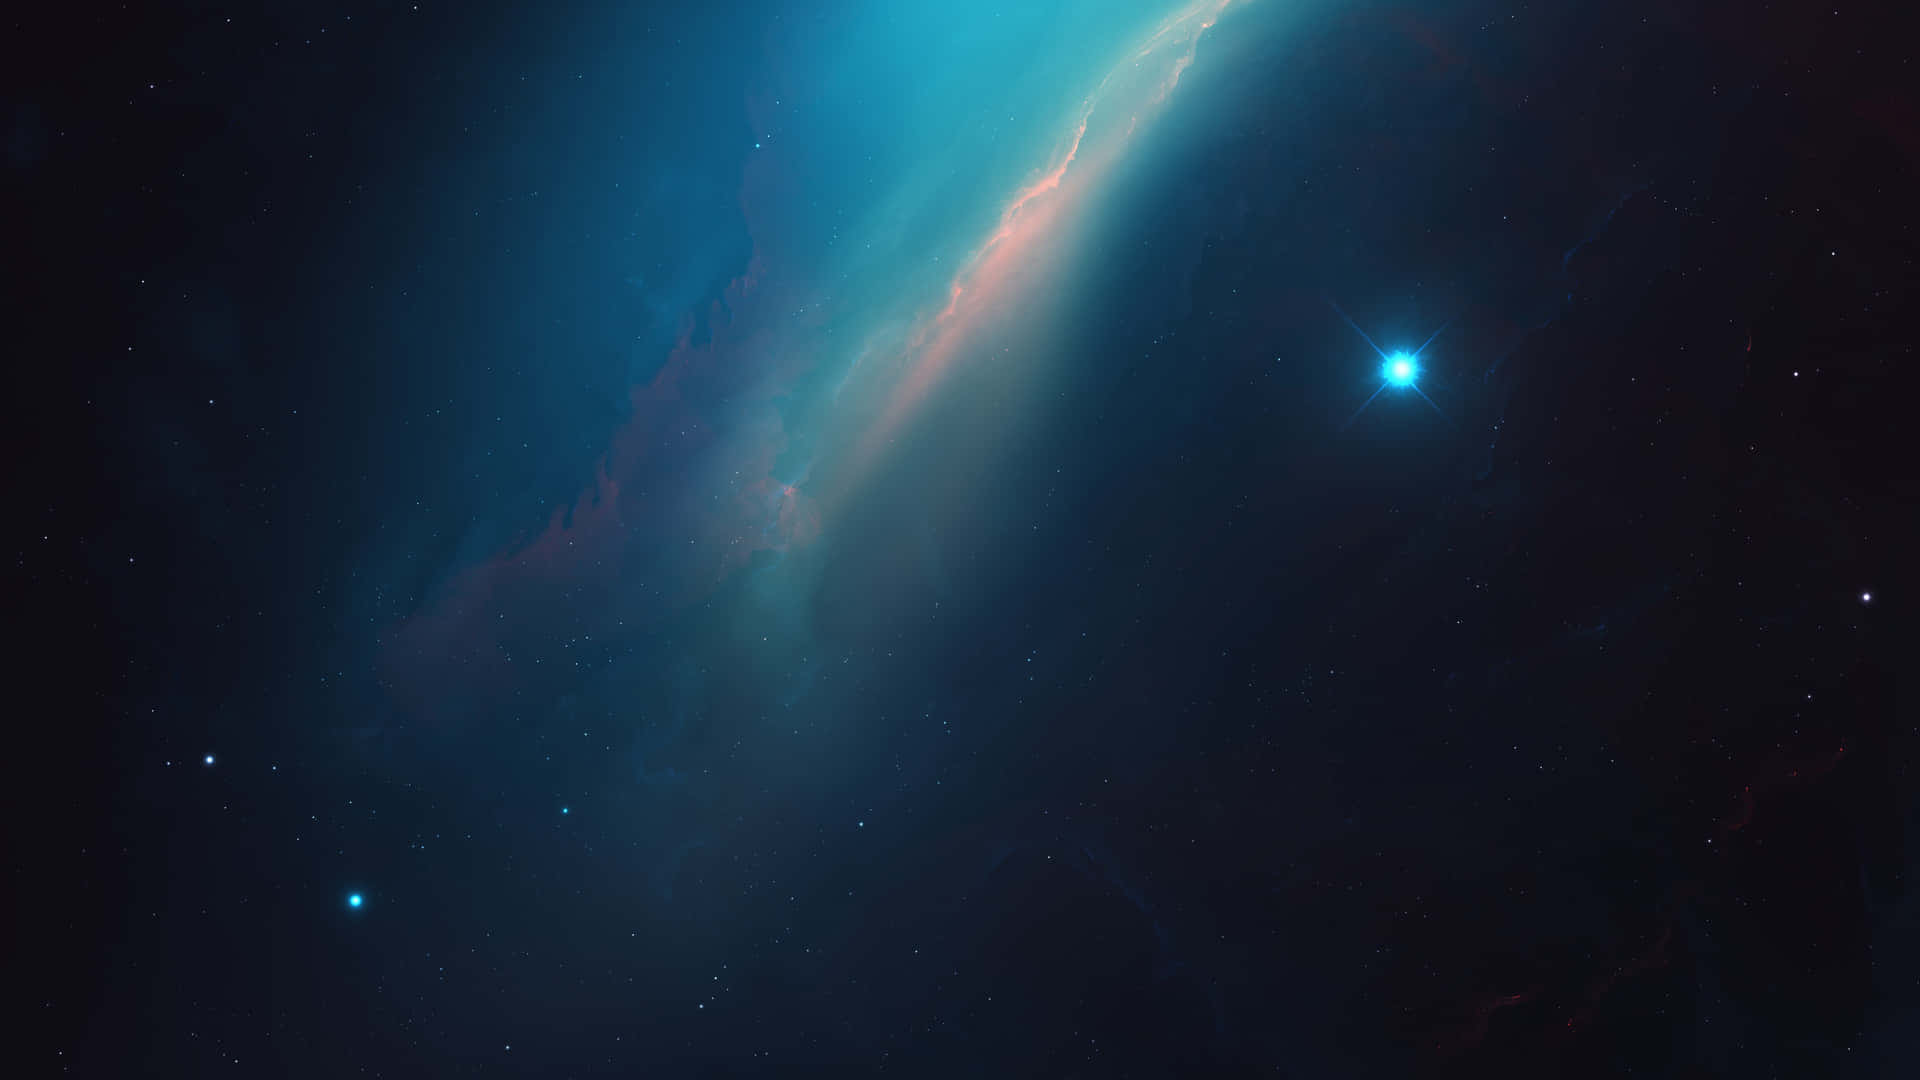 Bakgrundmed Rymdstjärnor Och Avtonad Blå Nebulosa.